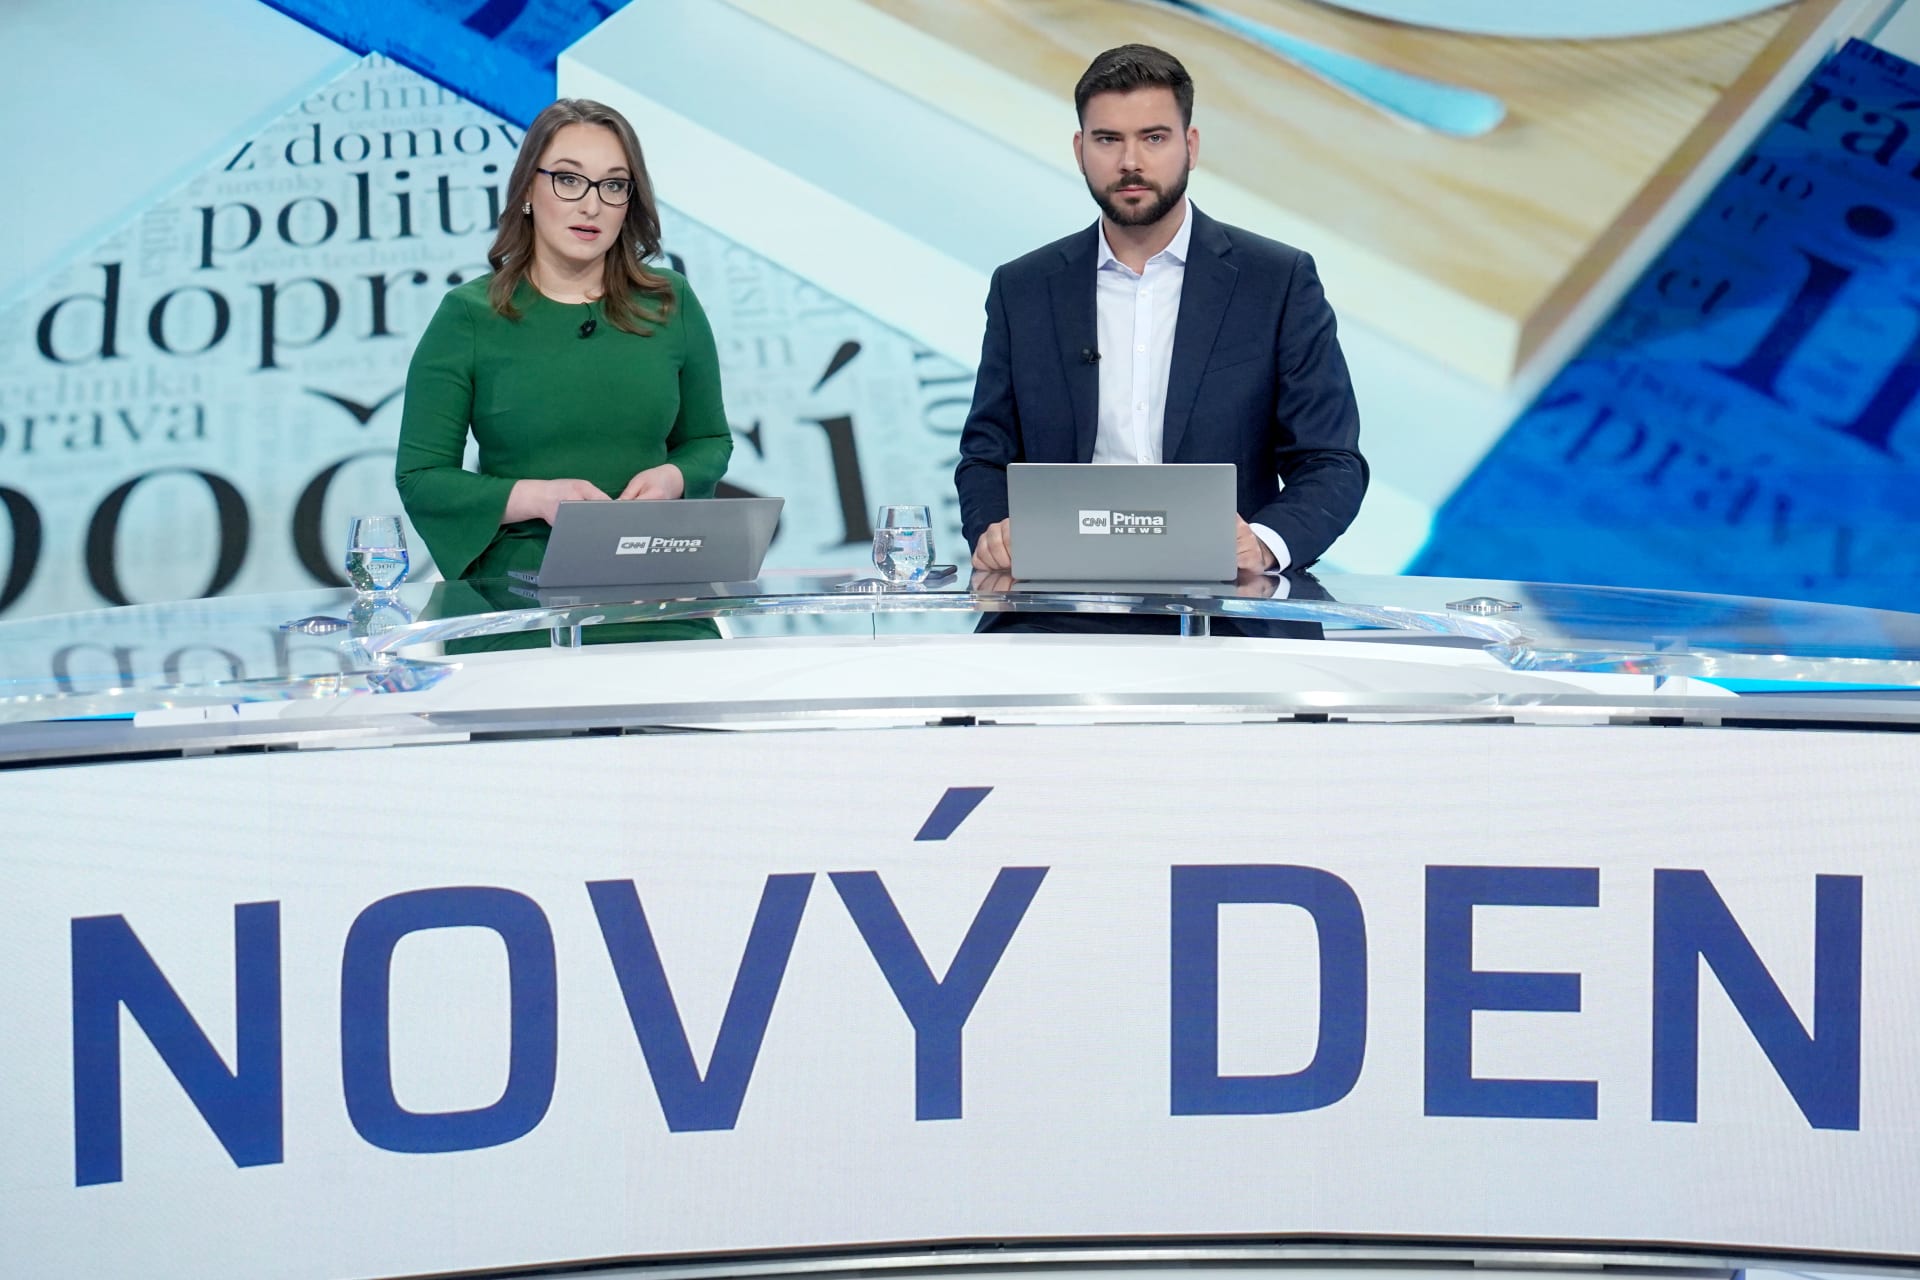 Pořad Nový den se bude více zaměřovat na aktuální zpravodajství, publicistiku, spotřebitelská a aktuální témata i rady, které divákům pomohou nastartovat jejich den.